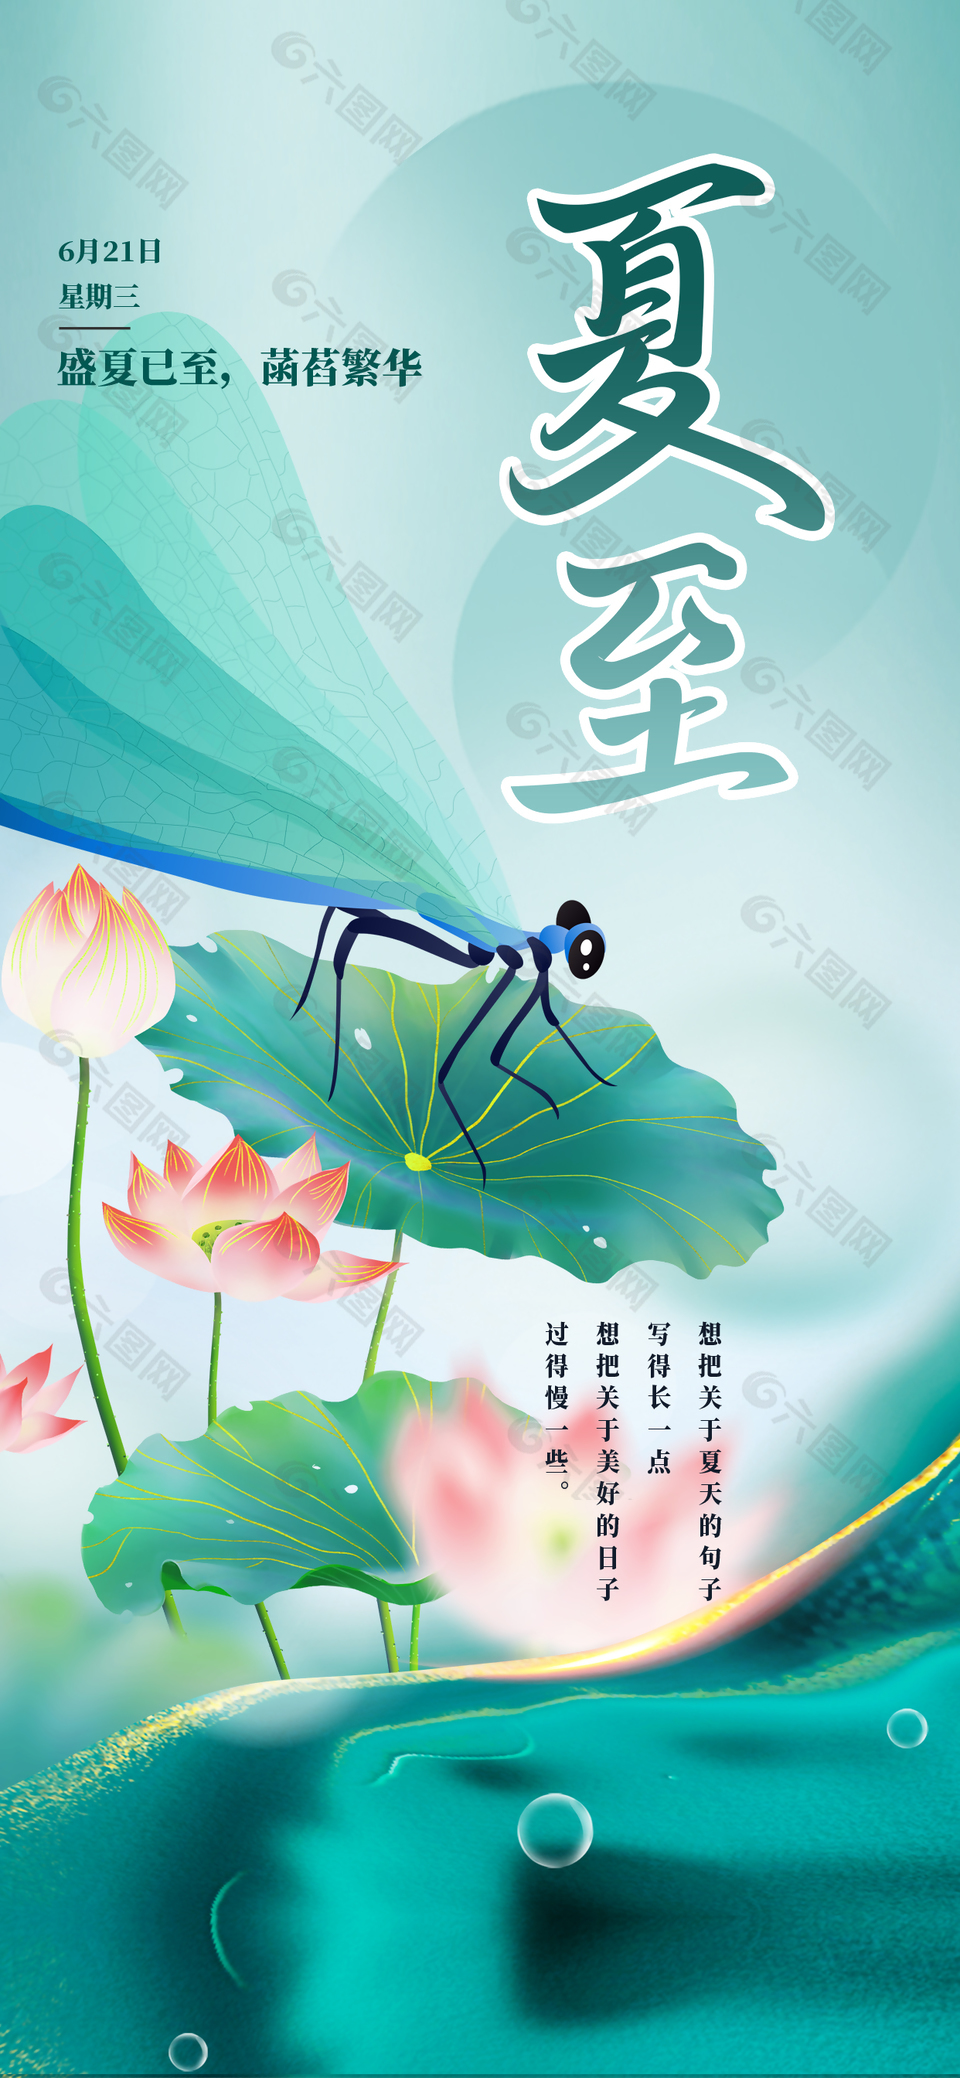 蜻蜓立荷传统夏至节气国潮手绘海报